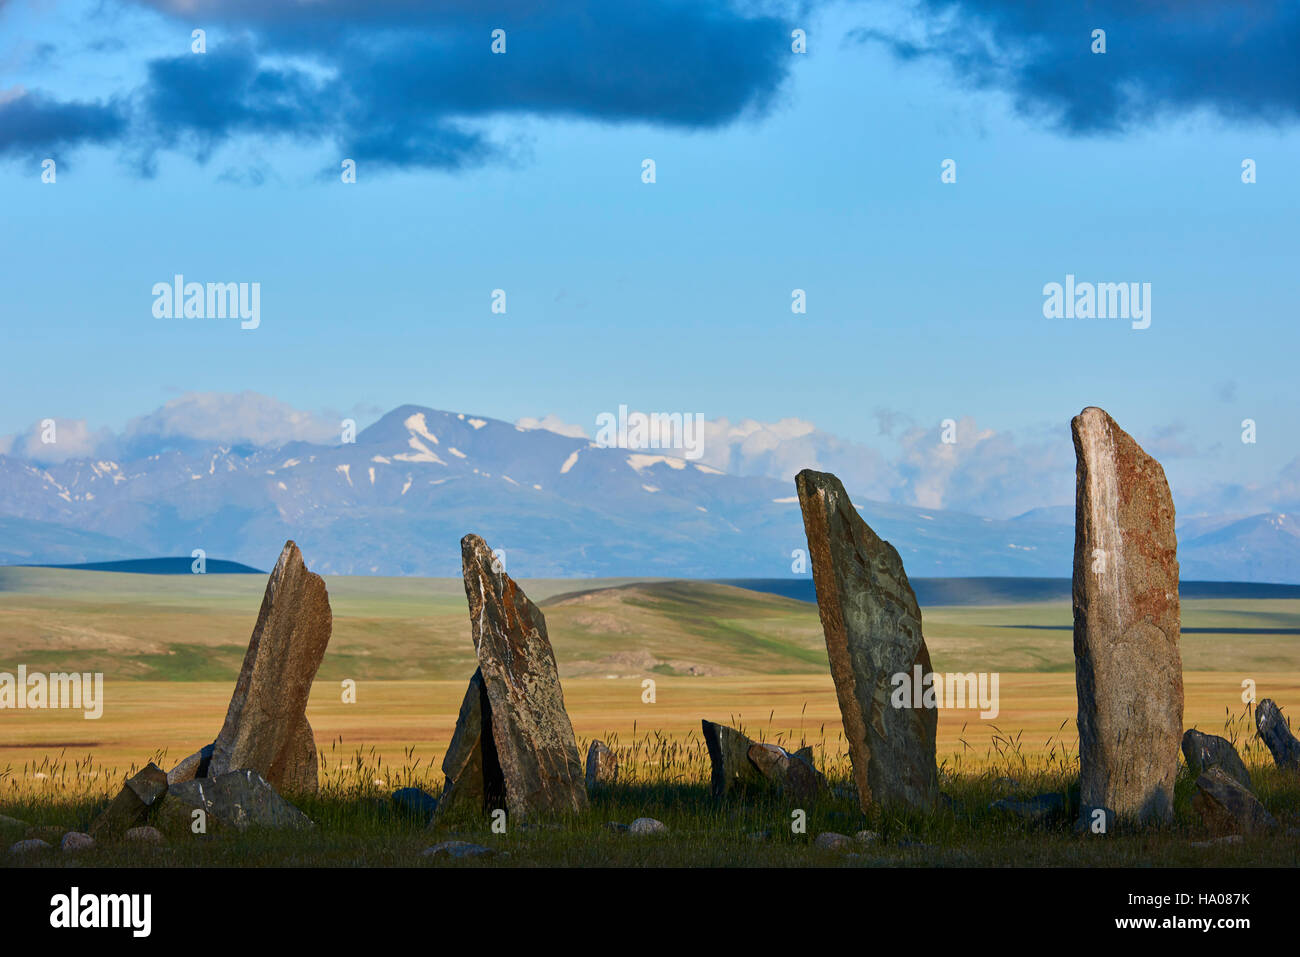 La Mongolie, Bayan-Ulgii province, l'ouest de la Mongolie, parc national de Tavan Bogd, Deer Stone, site funéraire, monument monolithique Banque D'Images